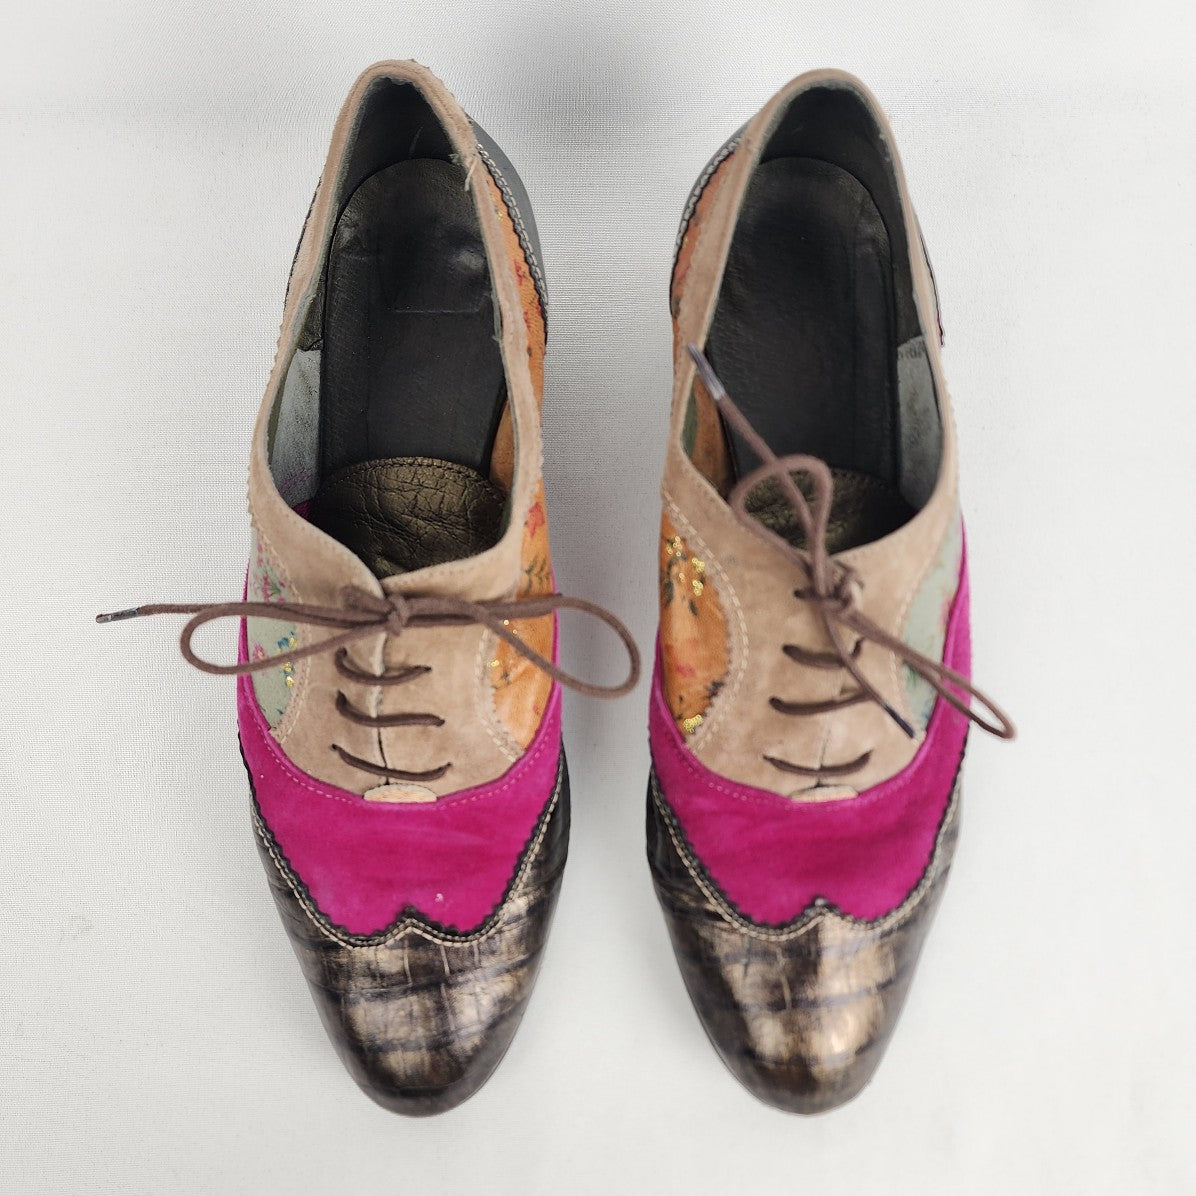 Adela Gonzalvez Pink Suede Floral Wedge Heel Tie Up Shoes Size 9